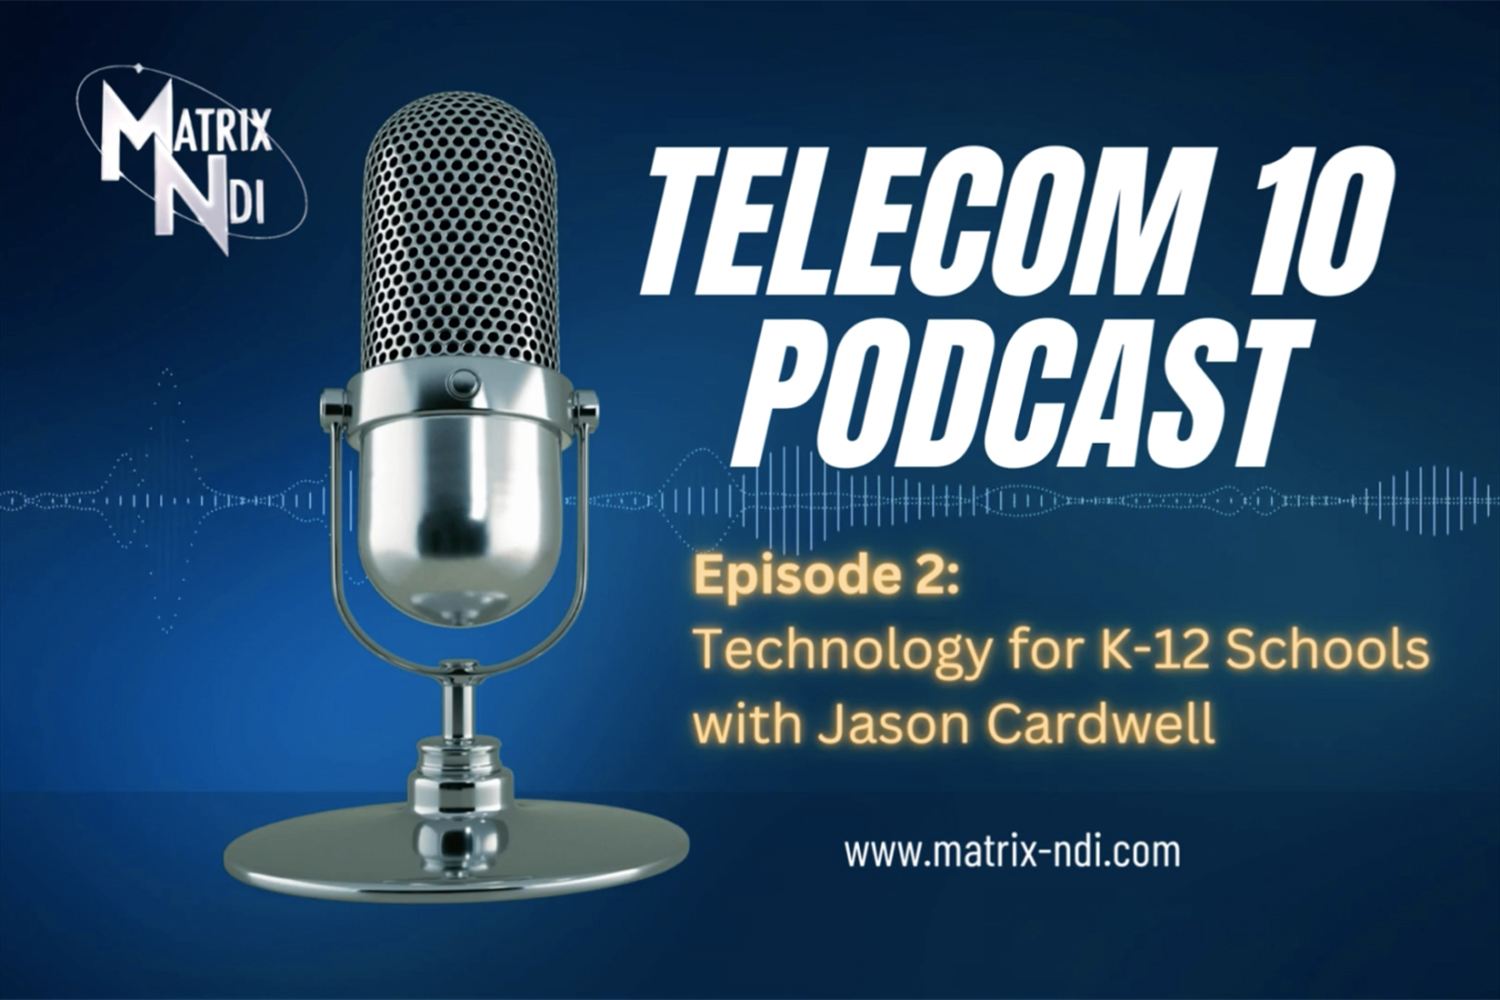 Matrix-NDI Telecom 10 Podcast 2: Interview with Jason Cardwell